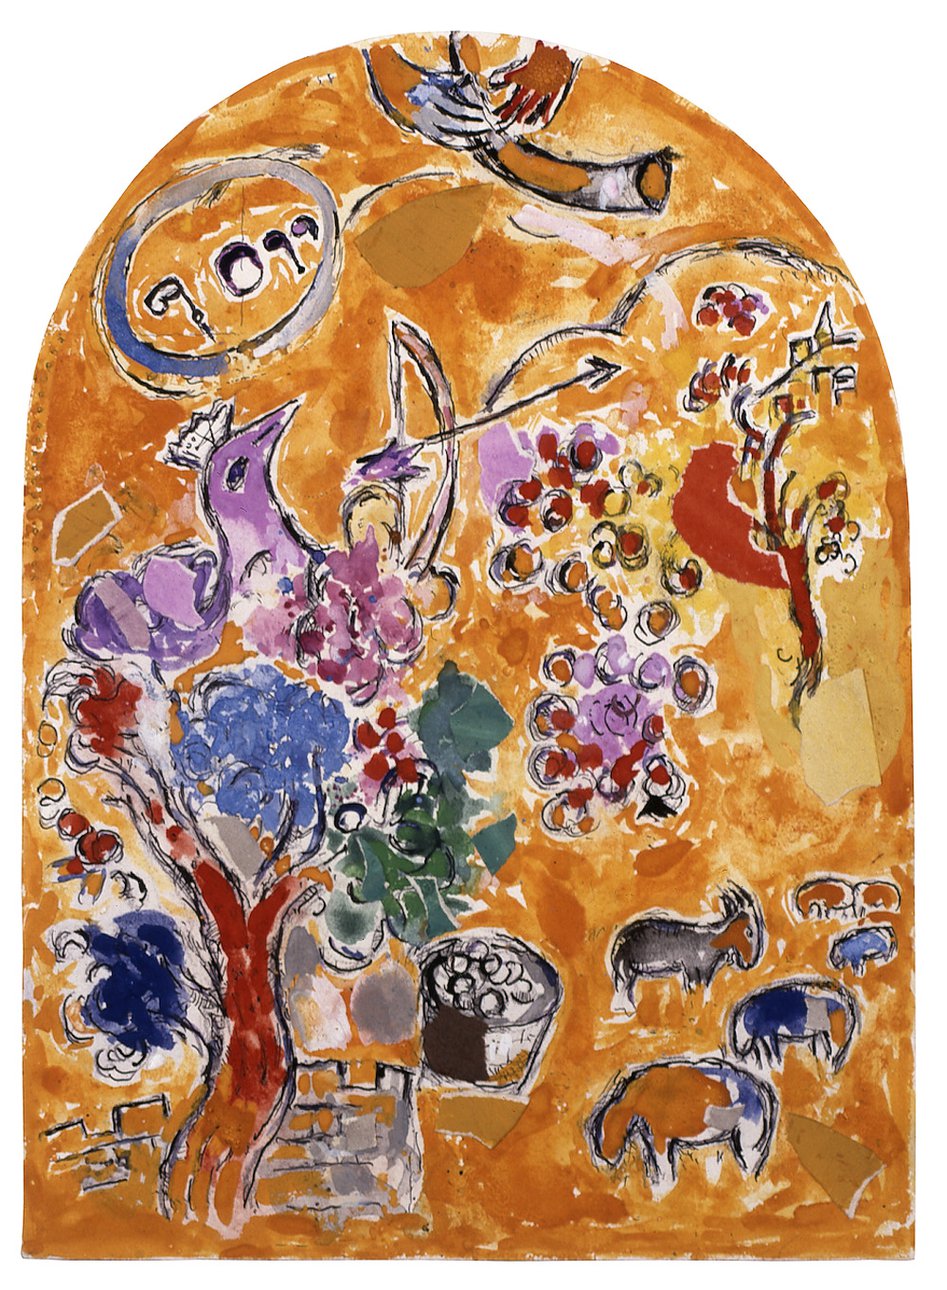 Марк Шагал. «Двенадцать колен израилевых».Подготовительная работа к витражам синагоги госпиталя Хадассы в Иерусалиме.«Колено Иосифа». 1959-1960. Частное собрание. Фото: © ADAGP Paris 2019 Chagall ®